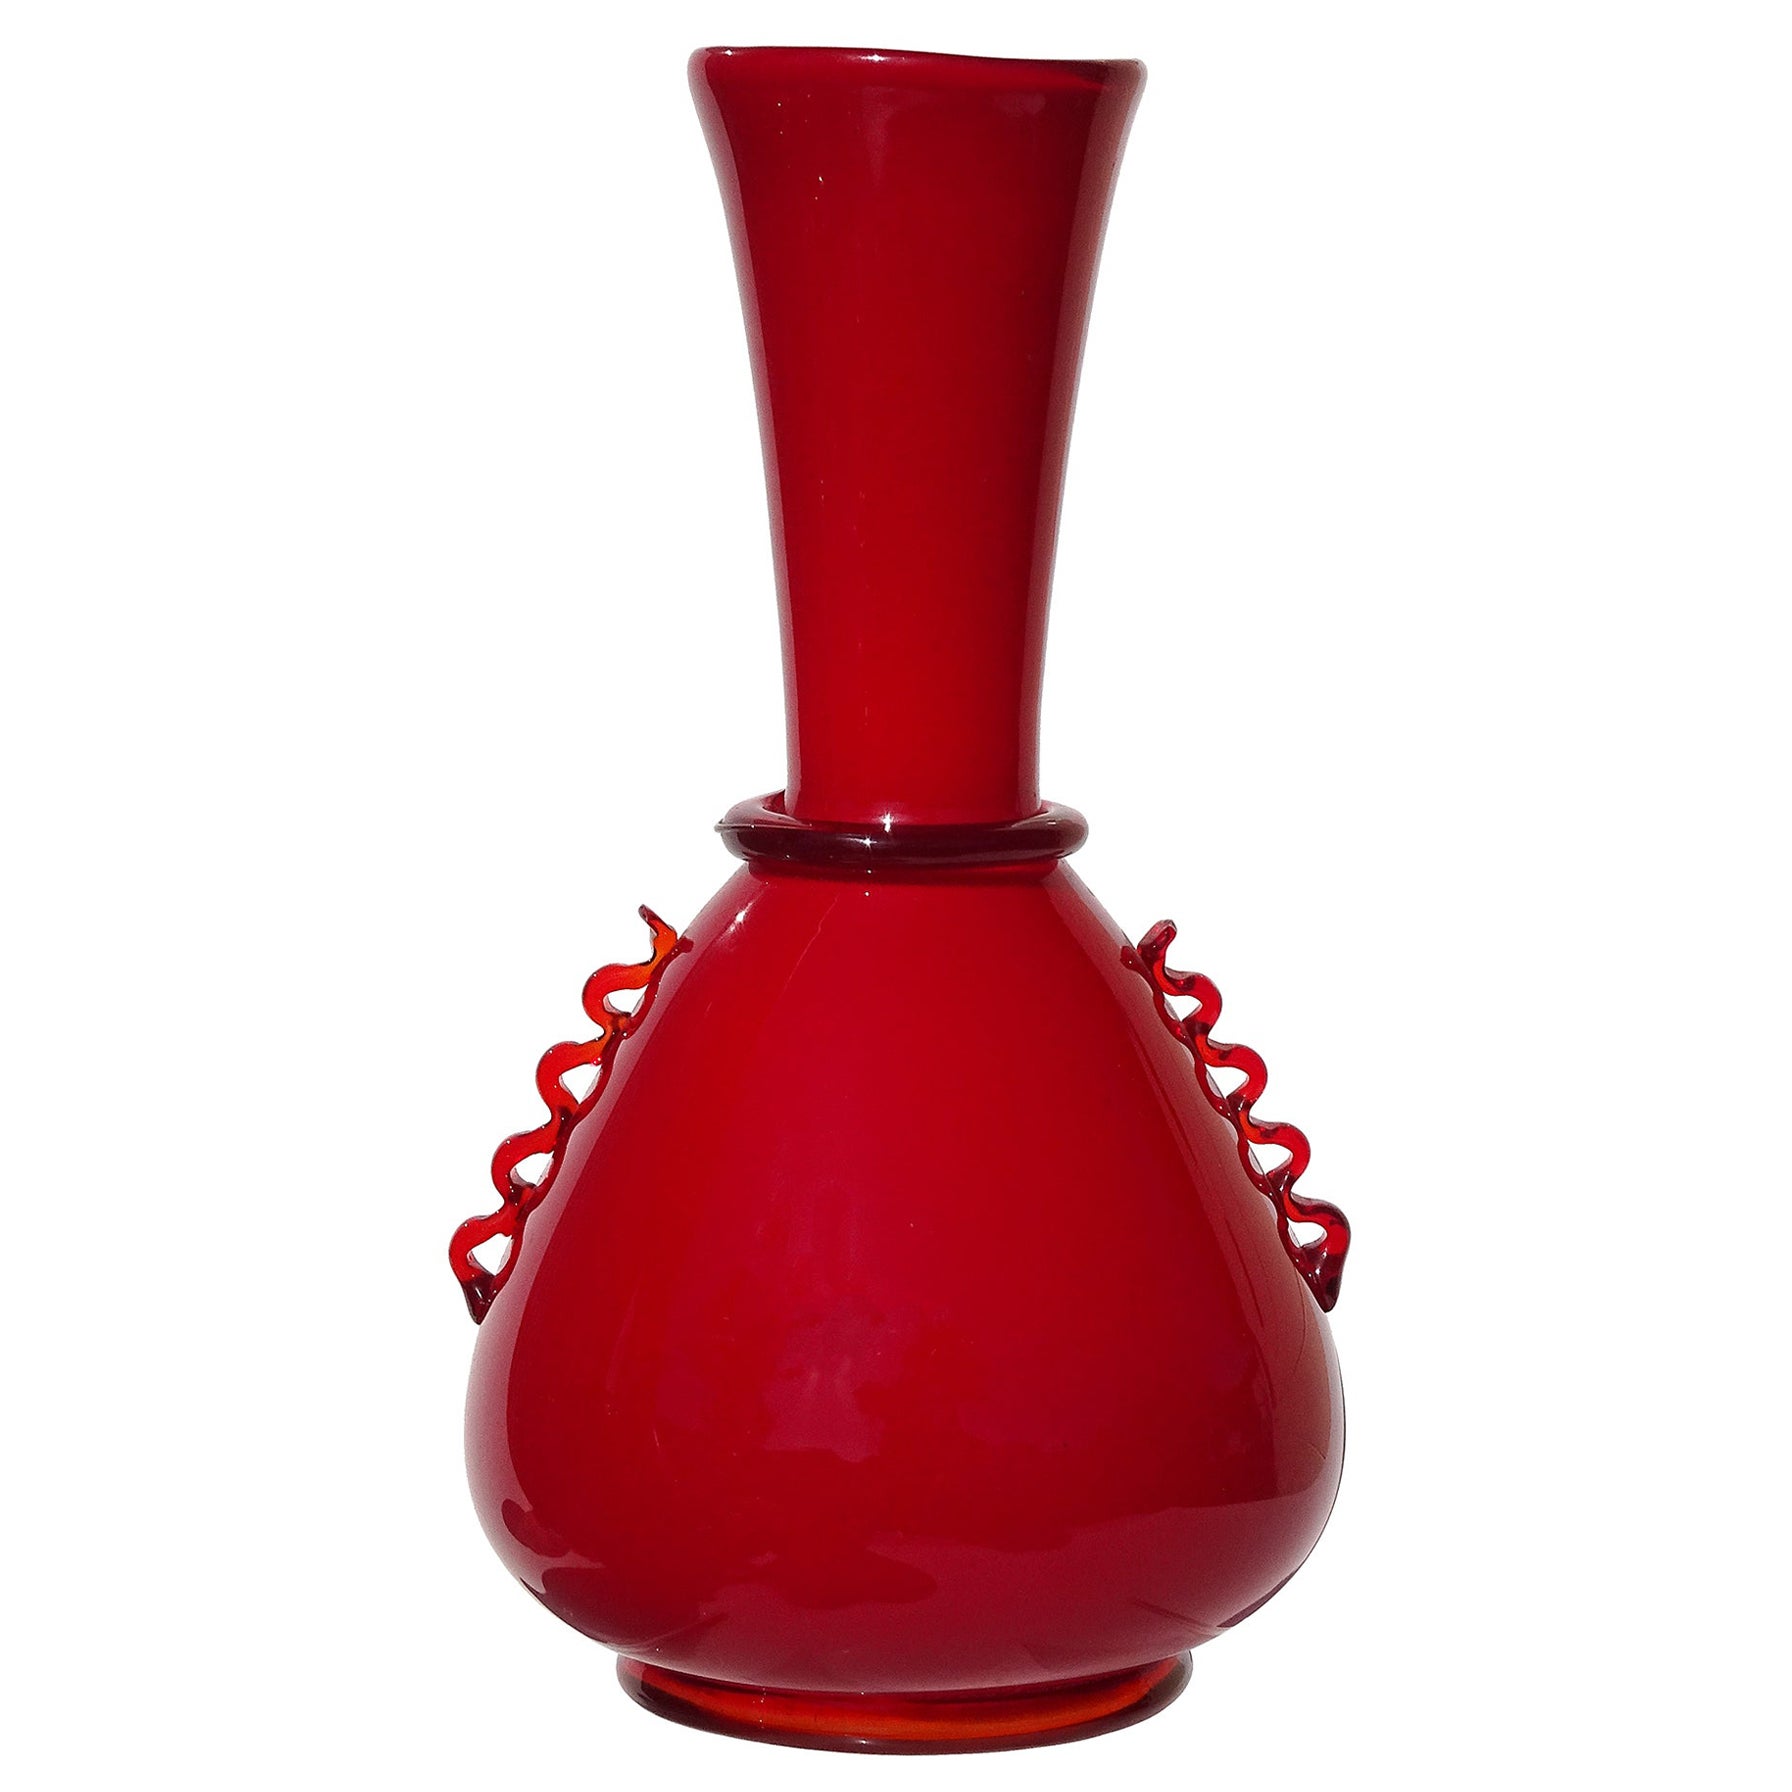 Murano Vetrerie Artistiche Cirillo Maschio 1930s Red Italian Art Deco Glass Vase